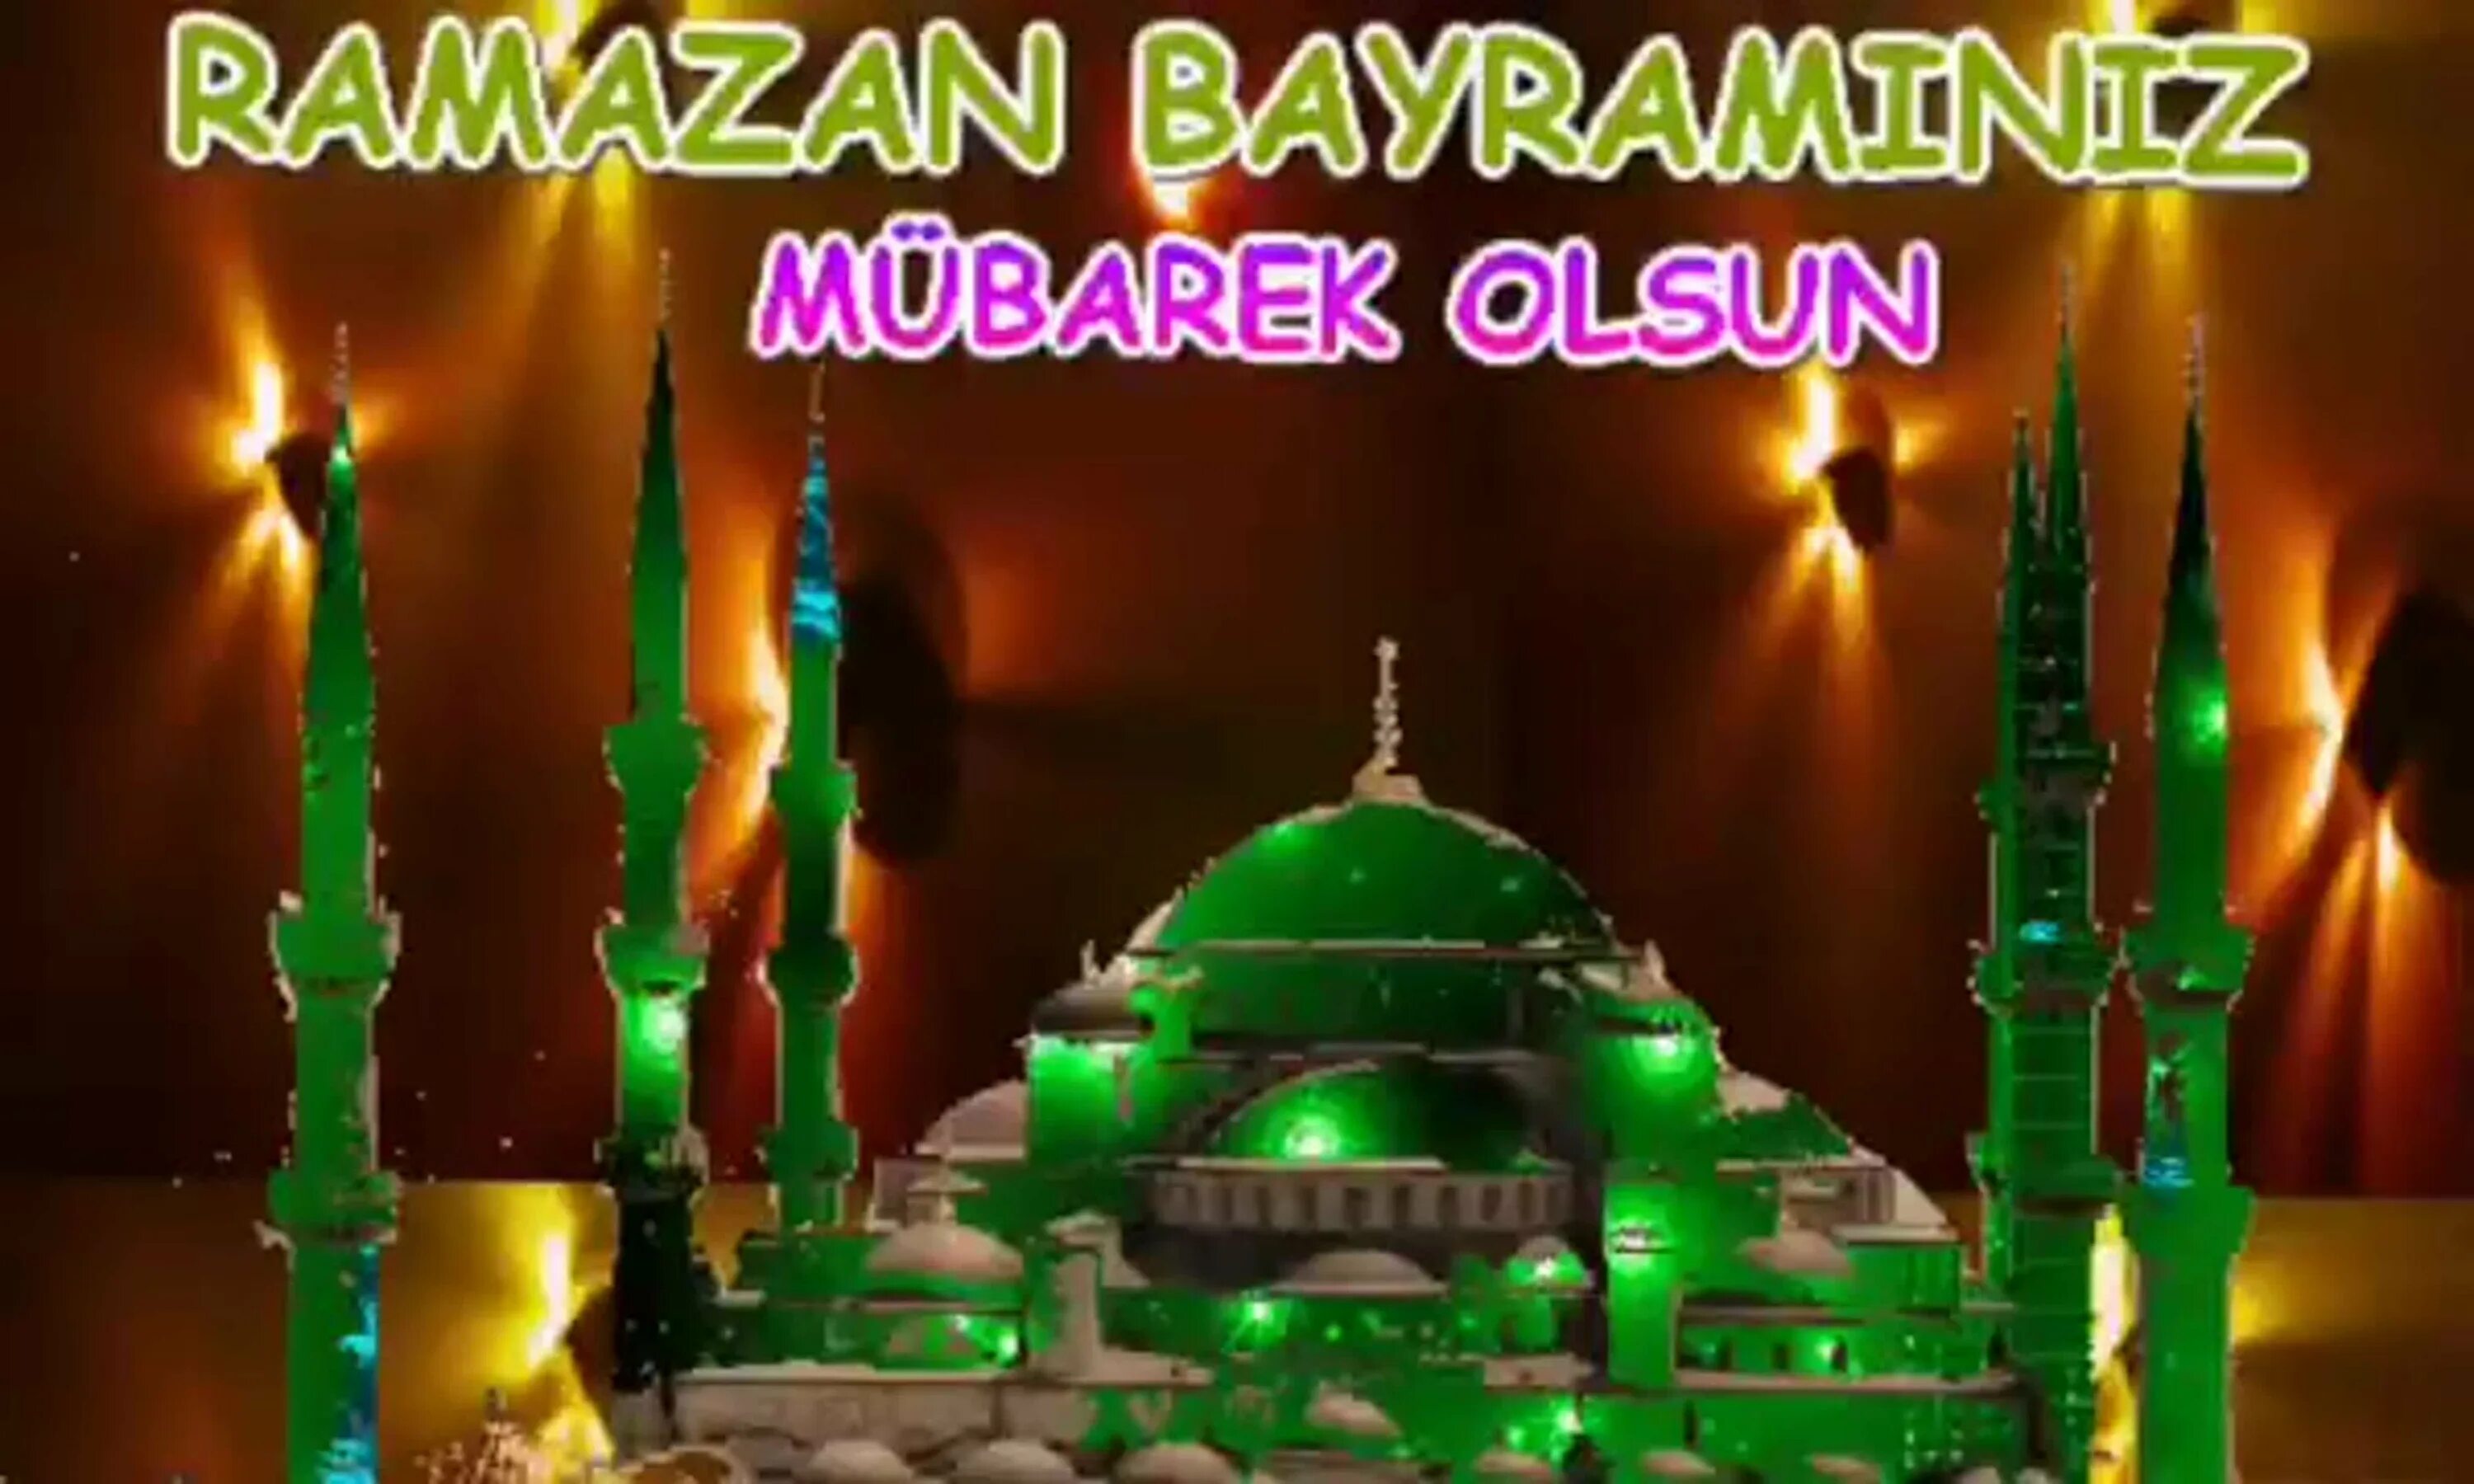 Ураза байрам на турецком языке. Рамазан байрам Мубарек. Ураза Bayraminiz mubarek. Рамазан байрам Мубарек олсун. Рамазан байрамыныз Мубарек.